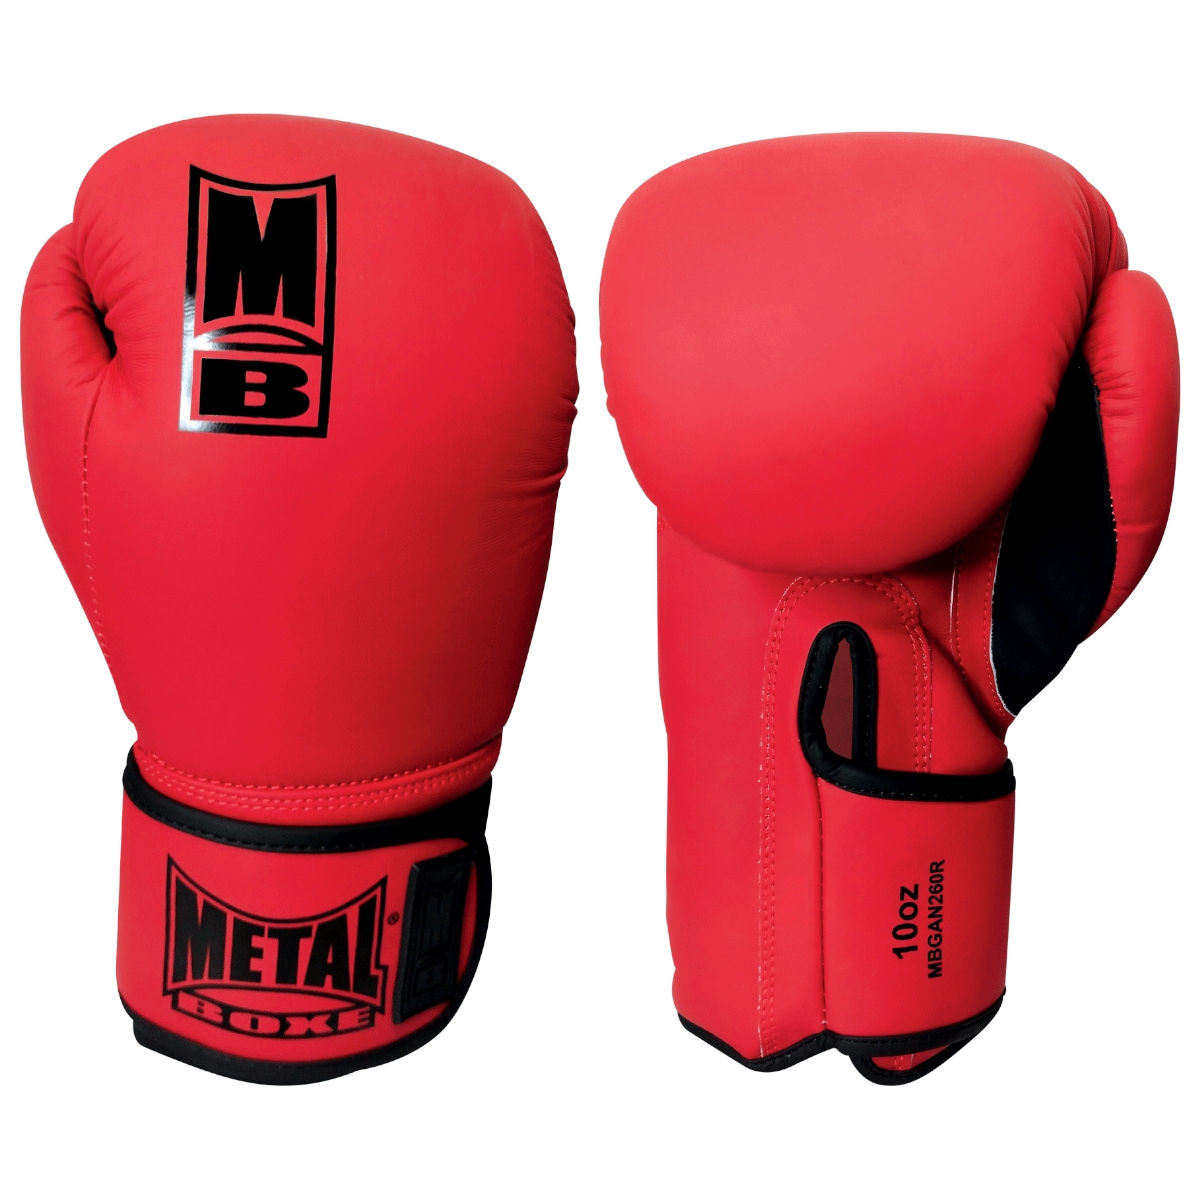 Gants de boxe Métal boxe - MBGAN220 - Rouge